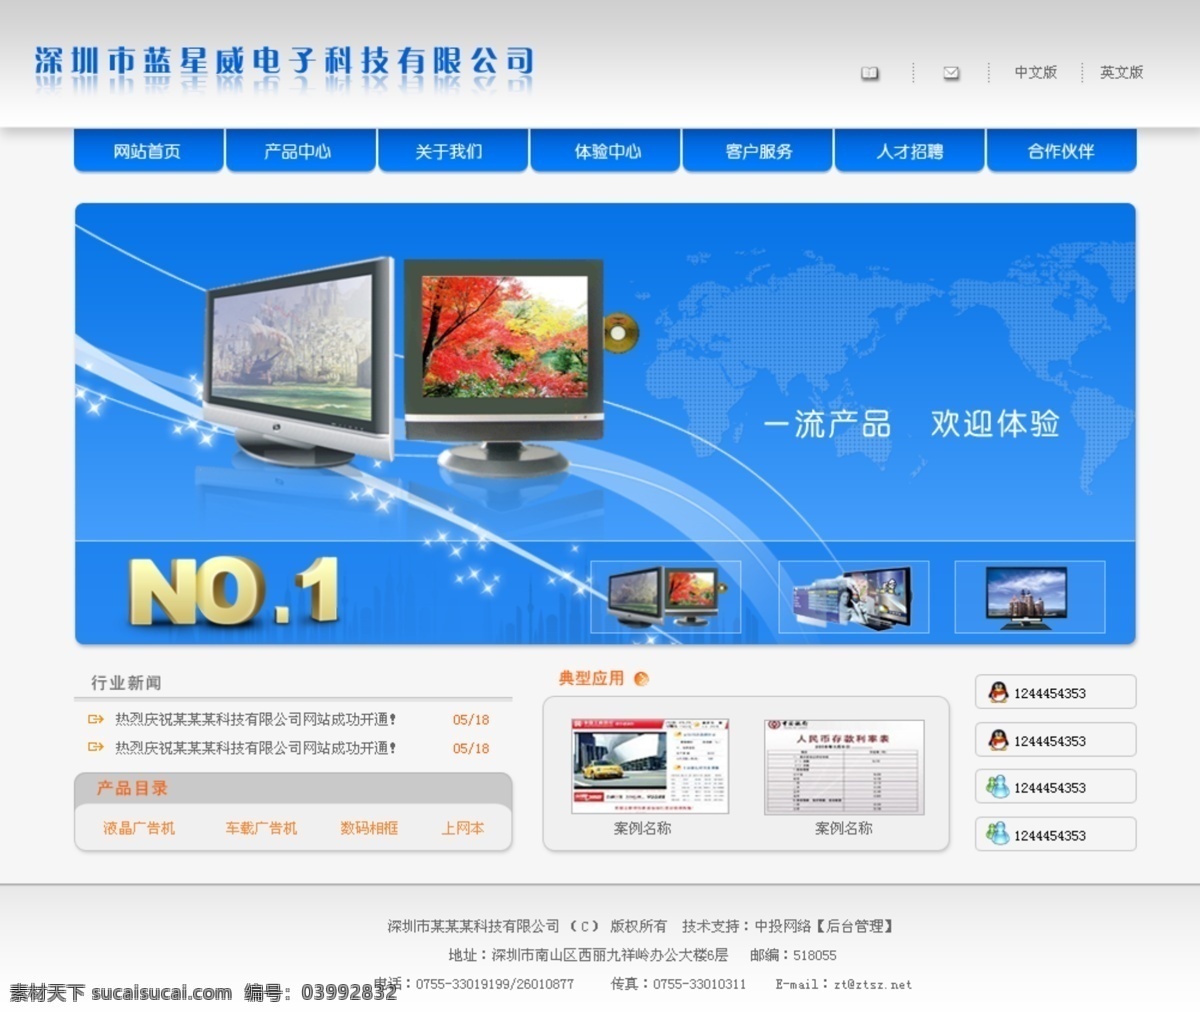 网页模板 模板 网站 效果图 液晶显示器 源文件 中文模版 液晶广告机 数码相框 礼品笔记本 蓝星威